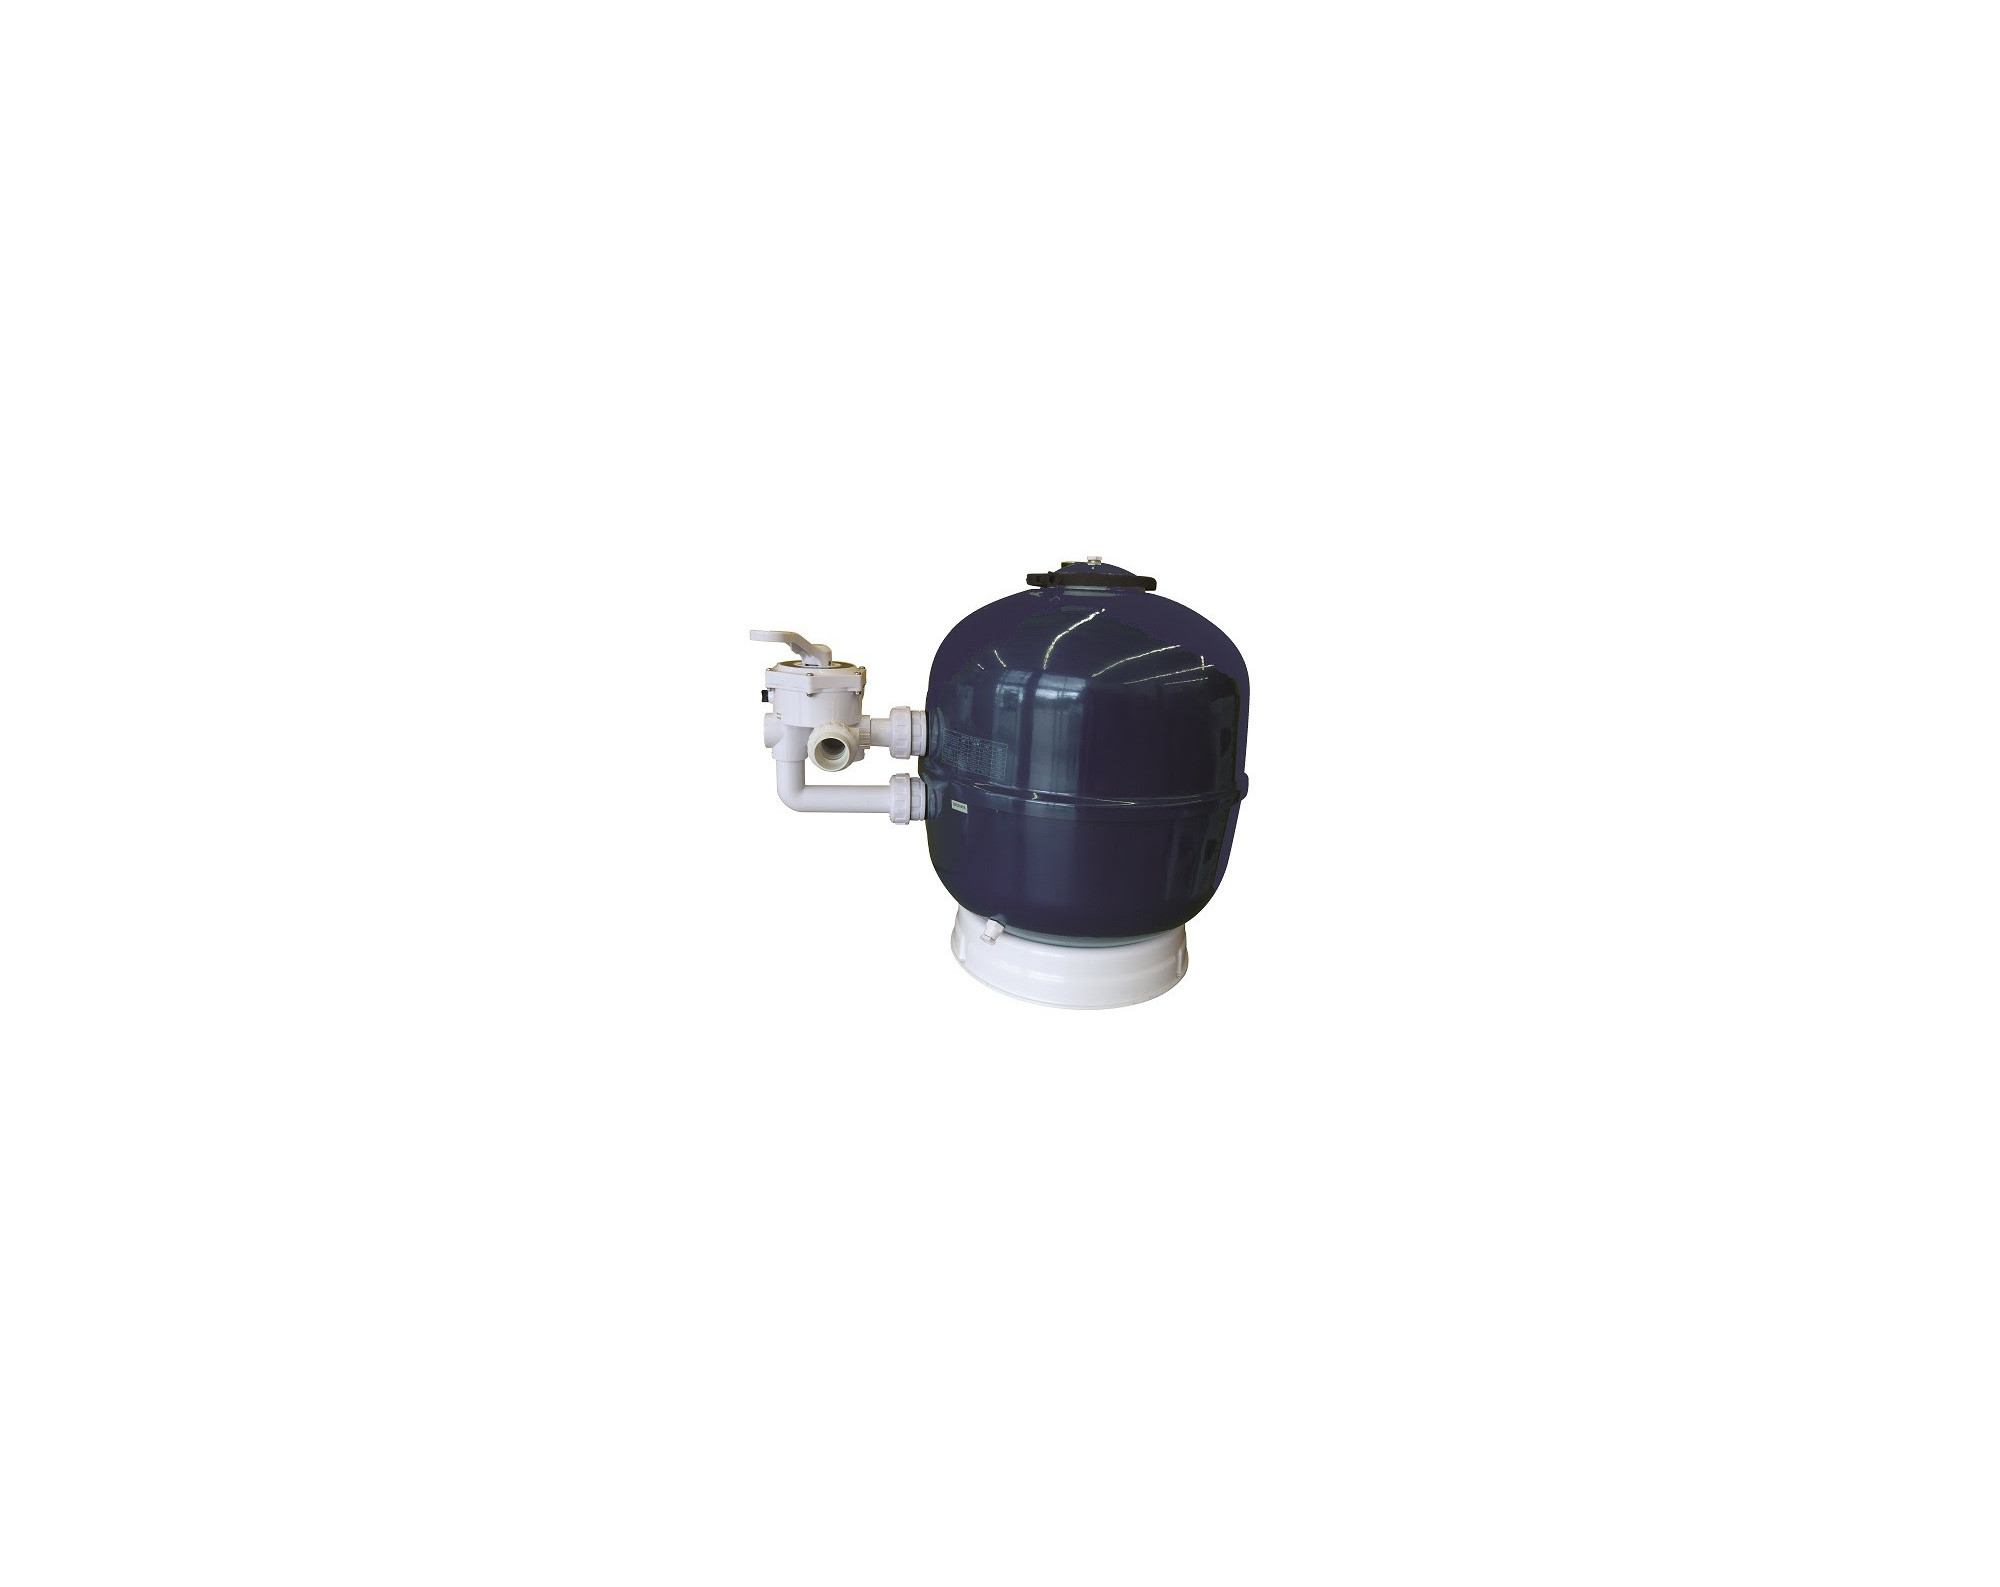 Zandfilter Bering blauw 22m³/h (750mm) met side mount kraan